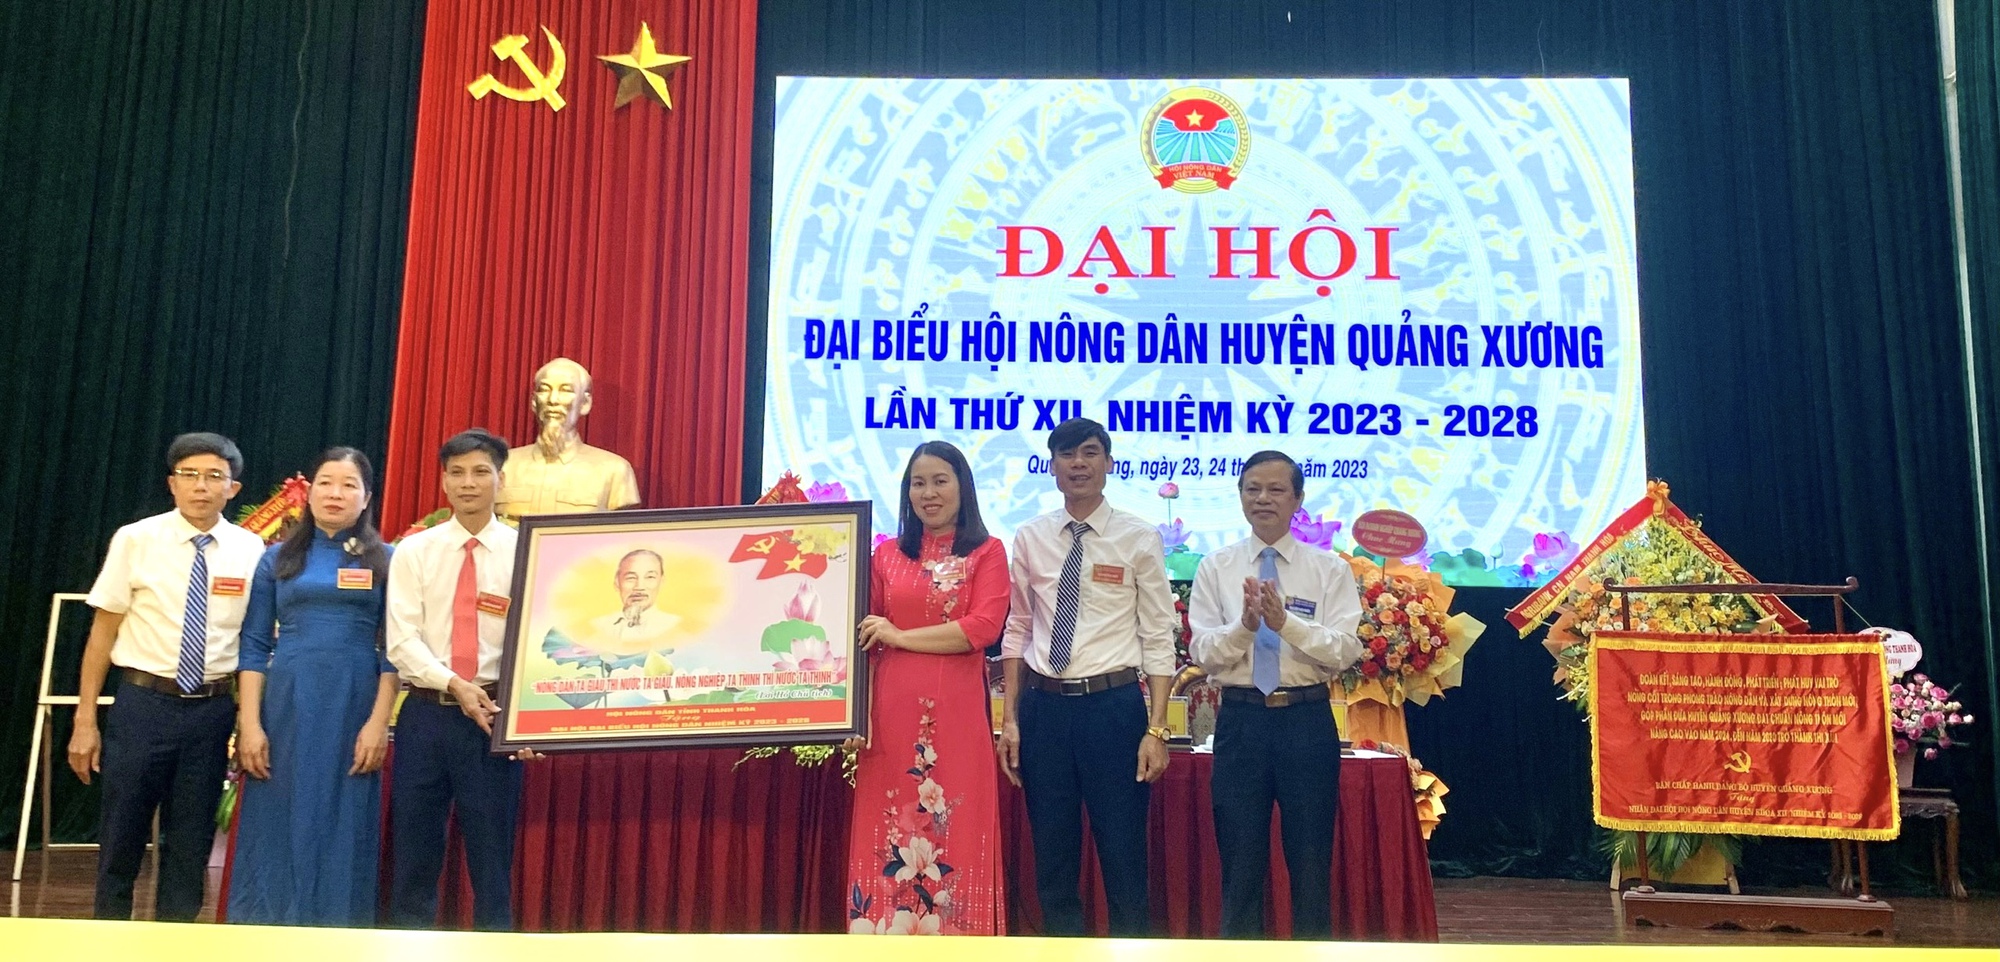  Đại hội đại biểu Hội Nông dân huyện Quảng Xương, ông Nguyễn Văn Linh tái đắc cử chức Chủ tịch - Ảnh 2.